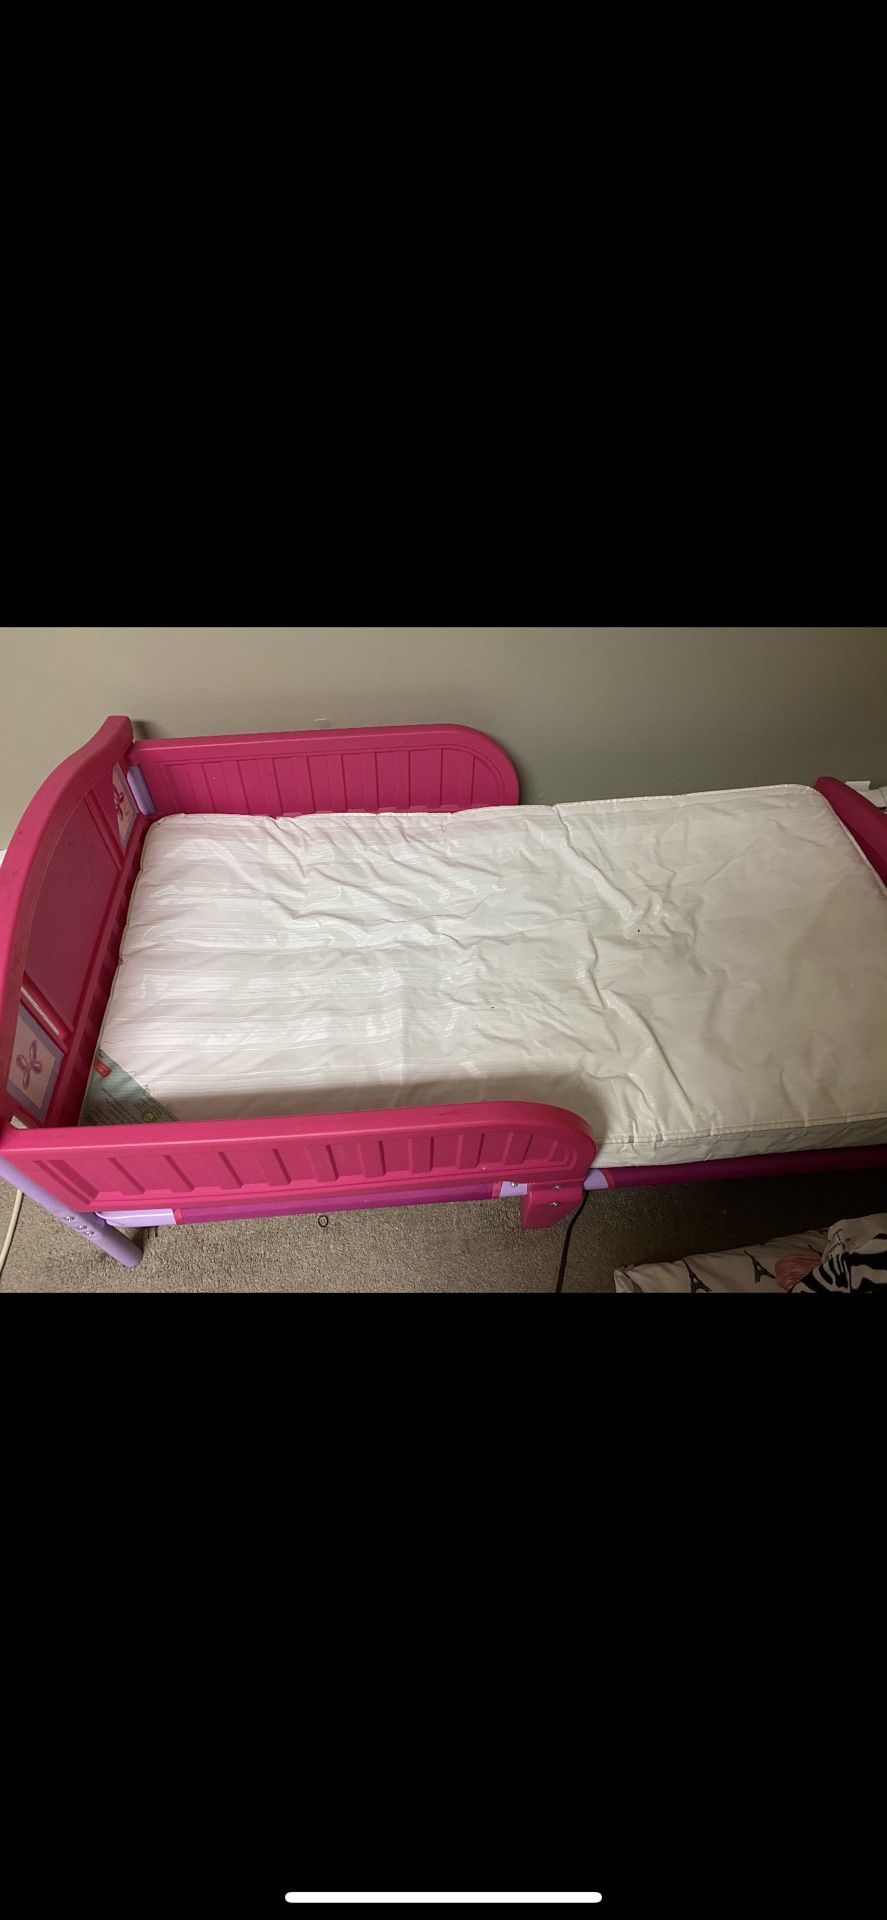 Toddler bed mattress